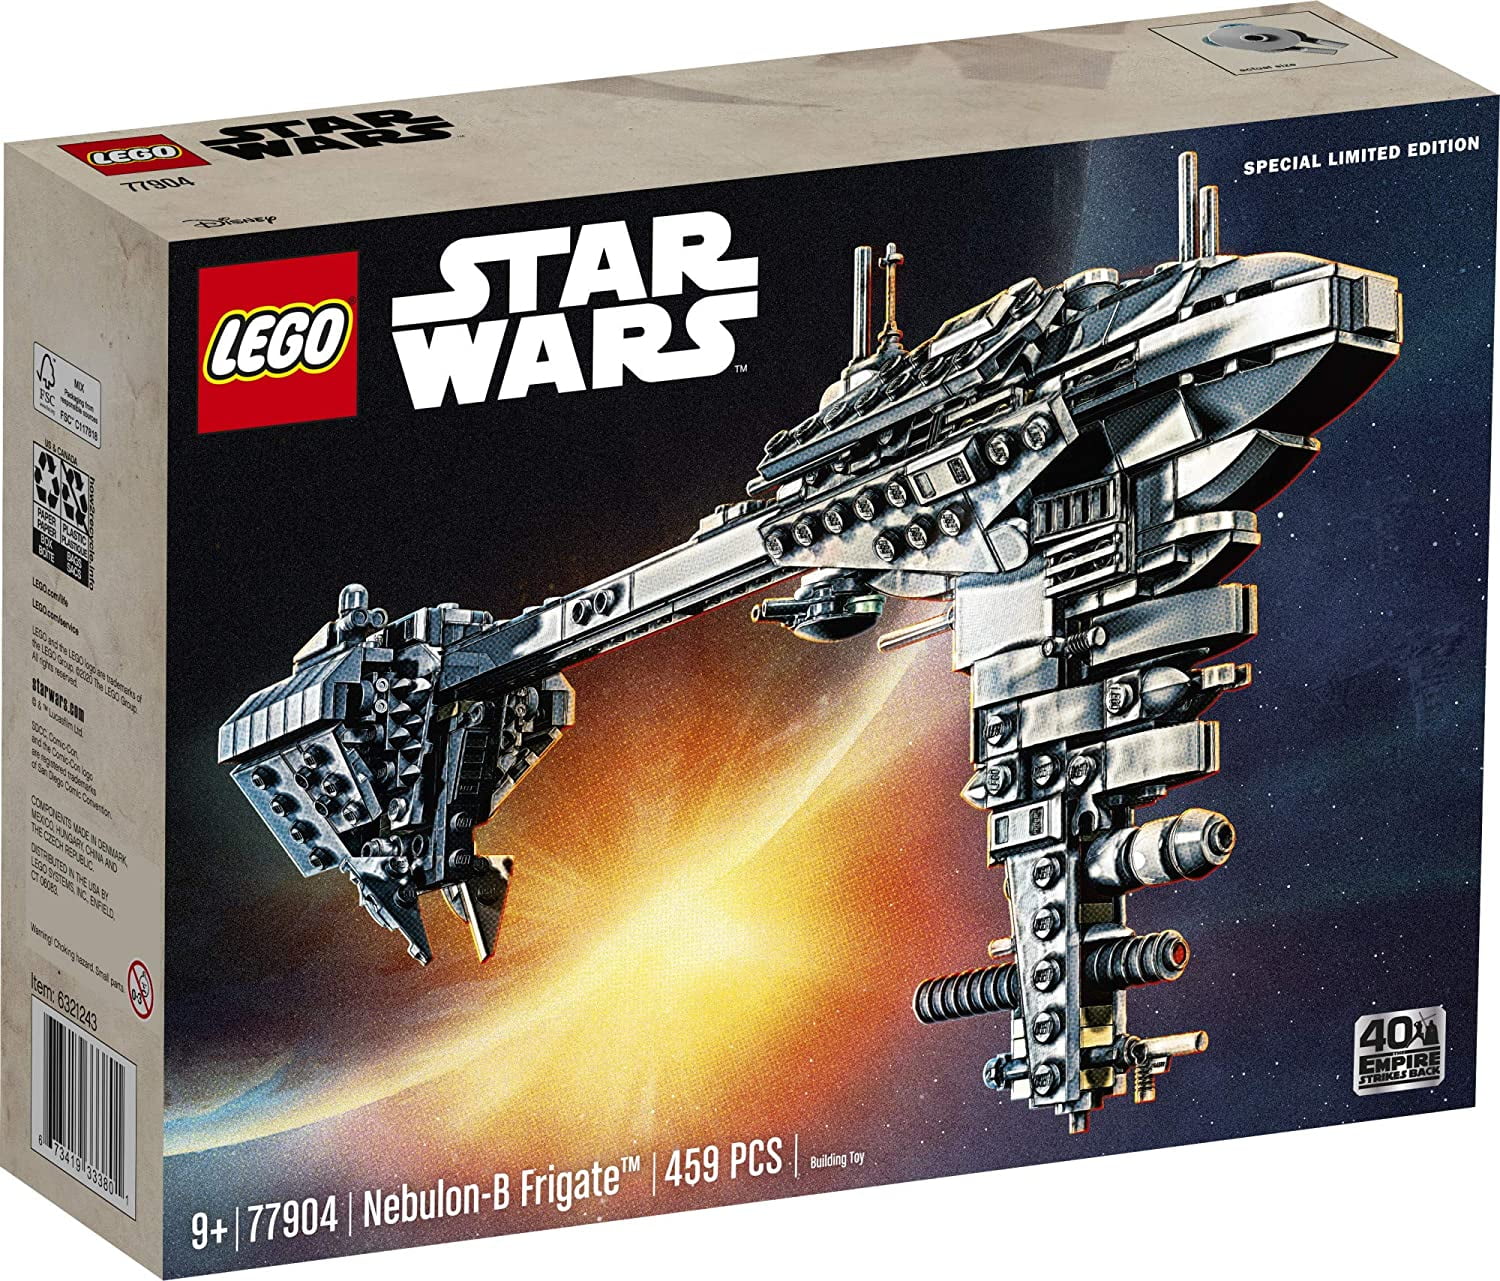 Sticker 131-Lego Star Wars 2020